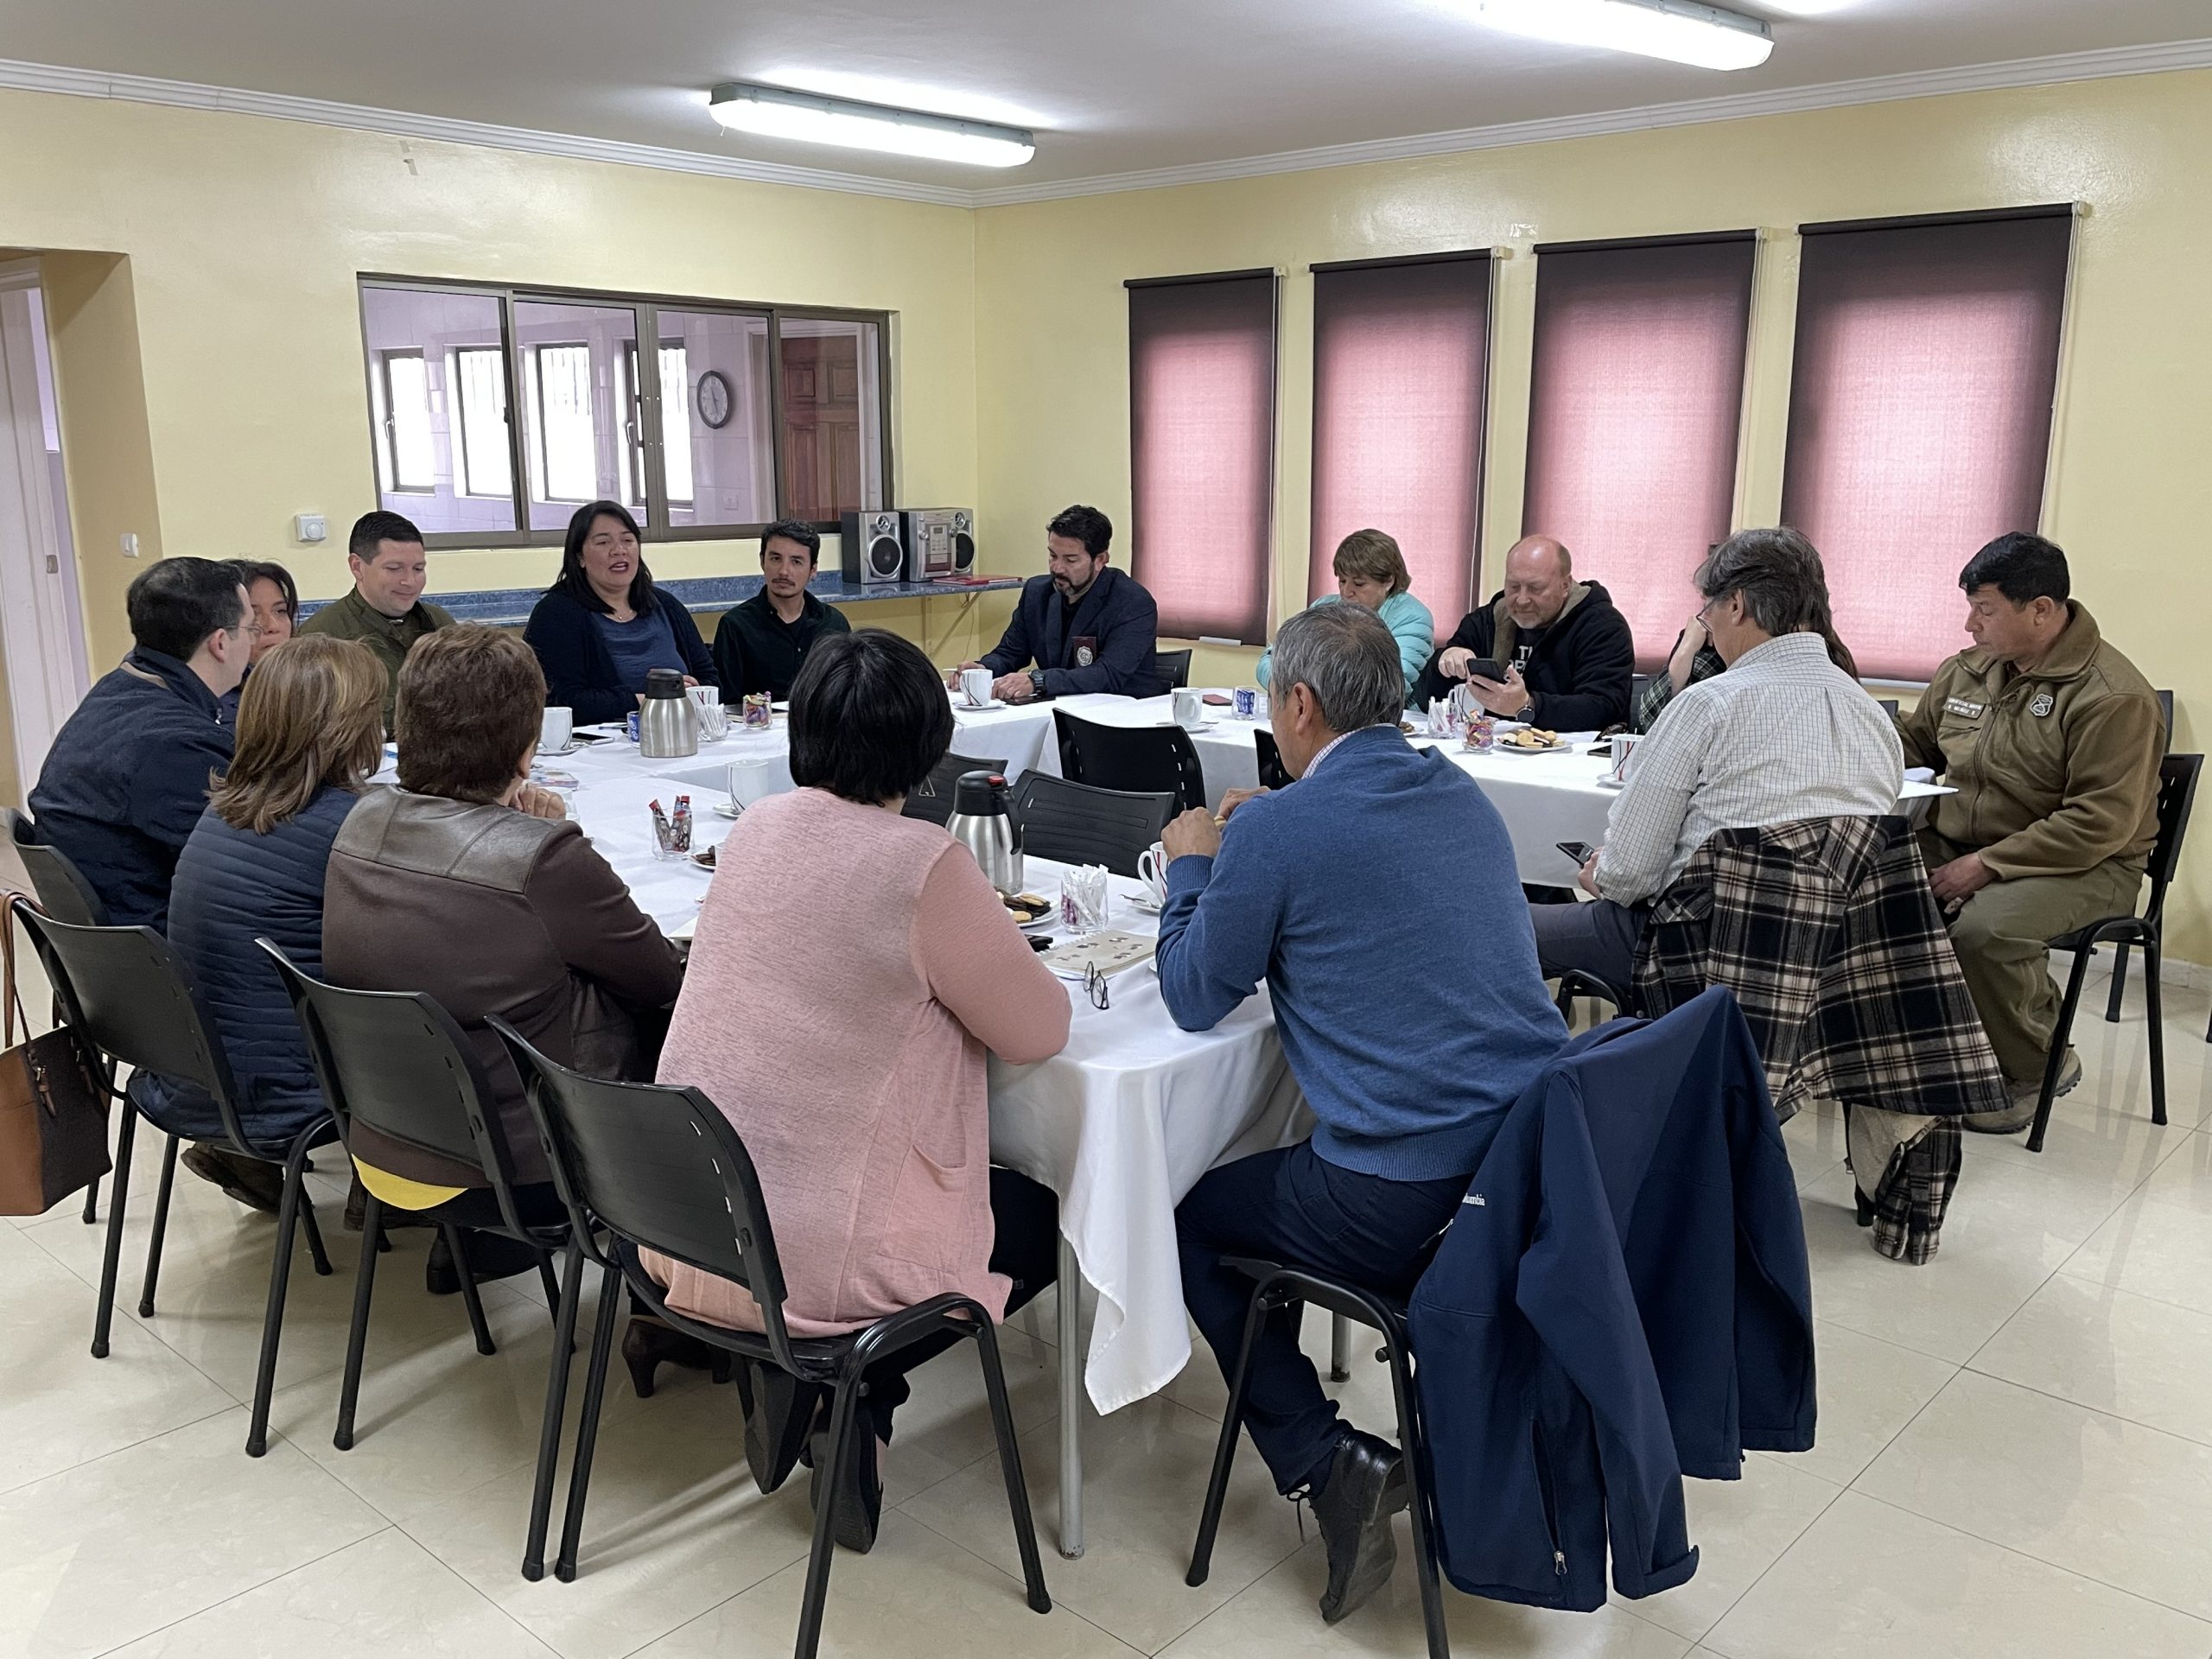 Gobierno Regional continúa trabajo preventivo y de seguridad con Juntas Vecinales del centro de Punta Arenas